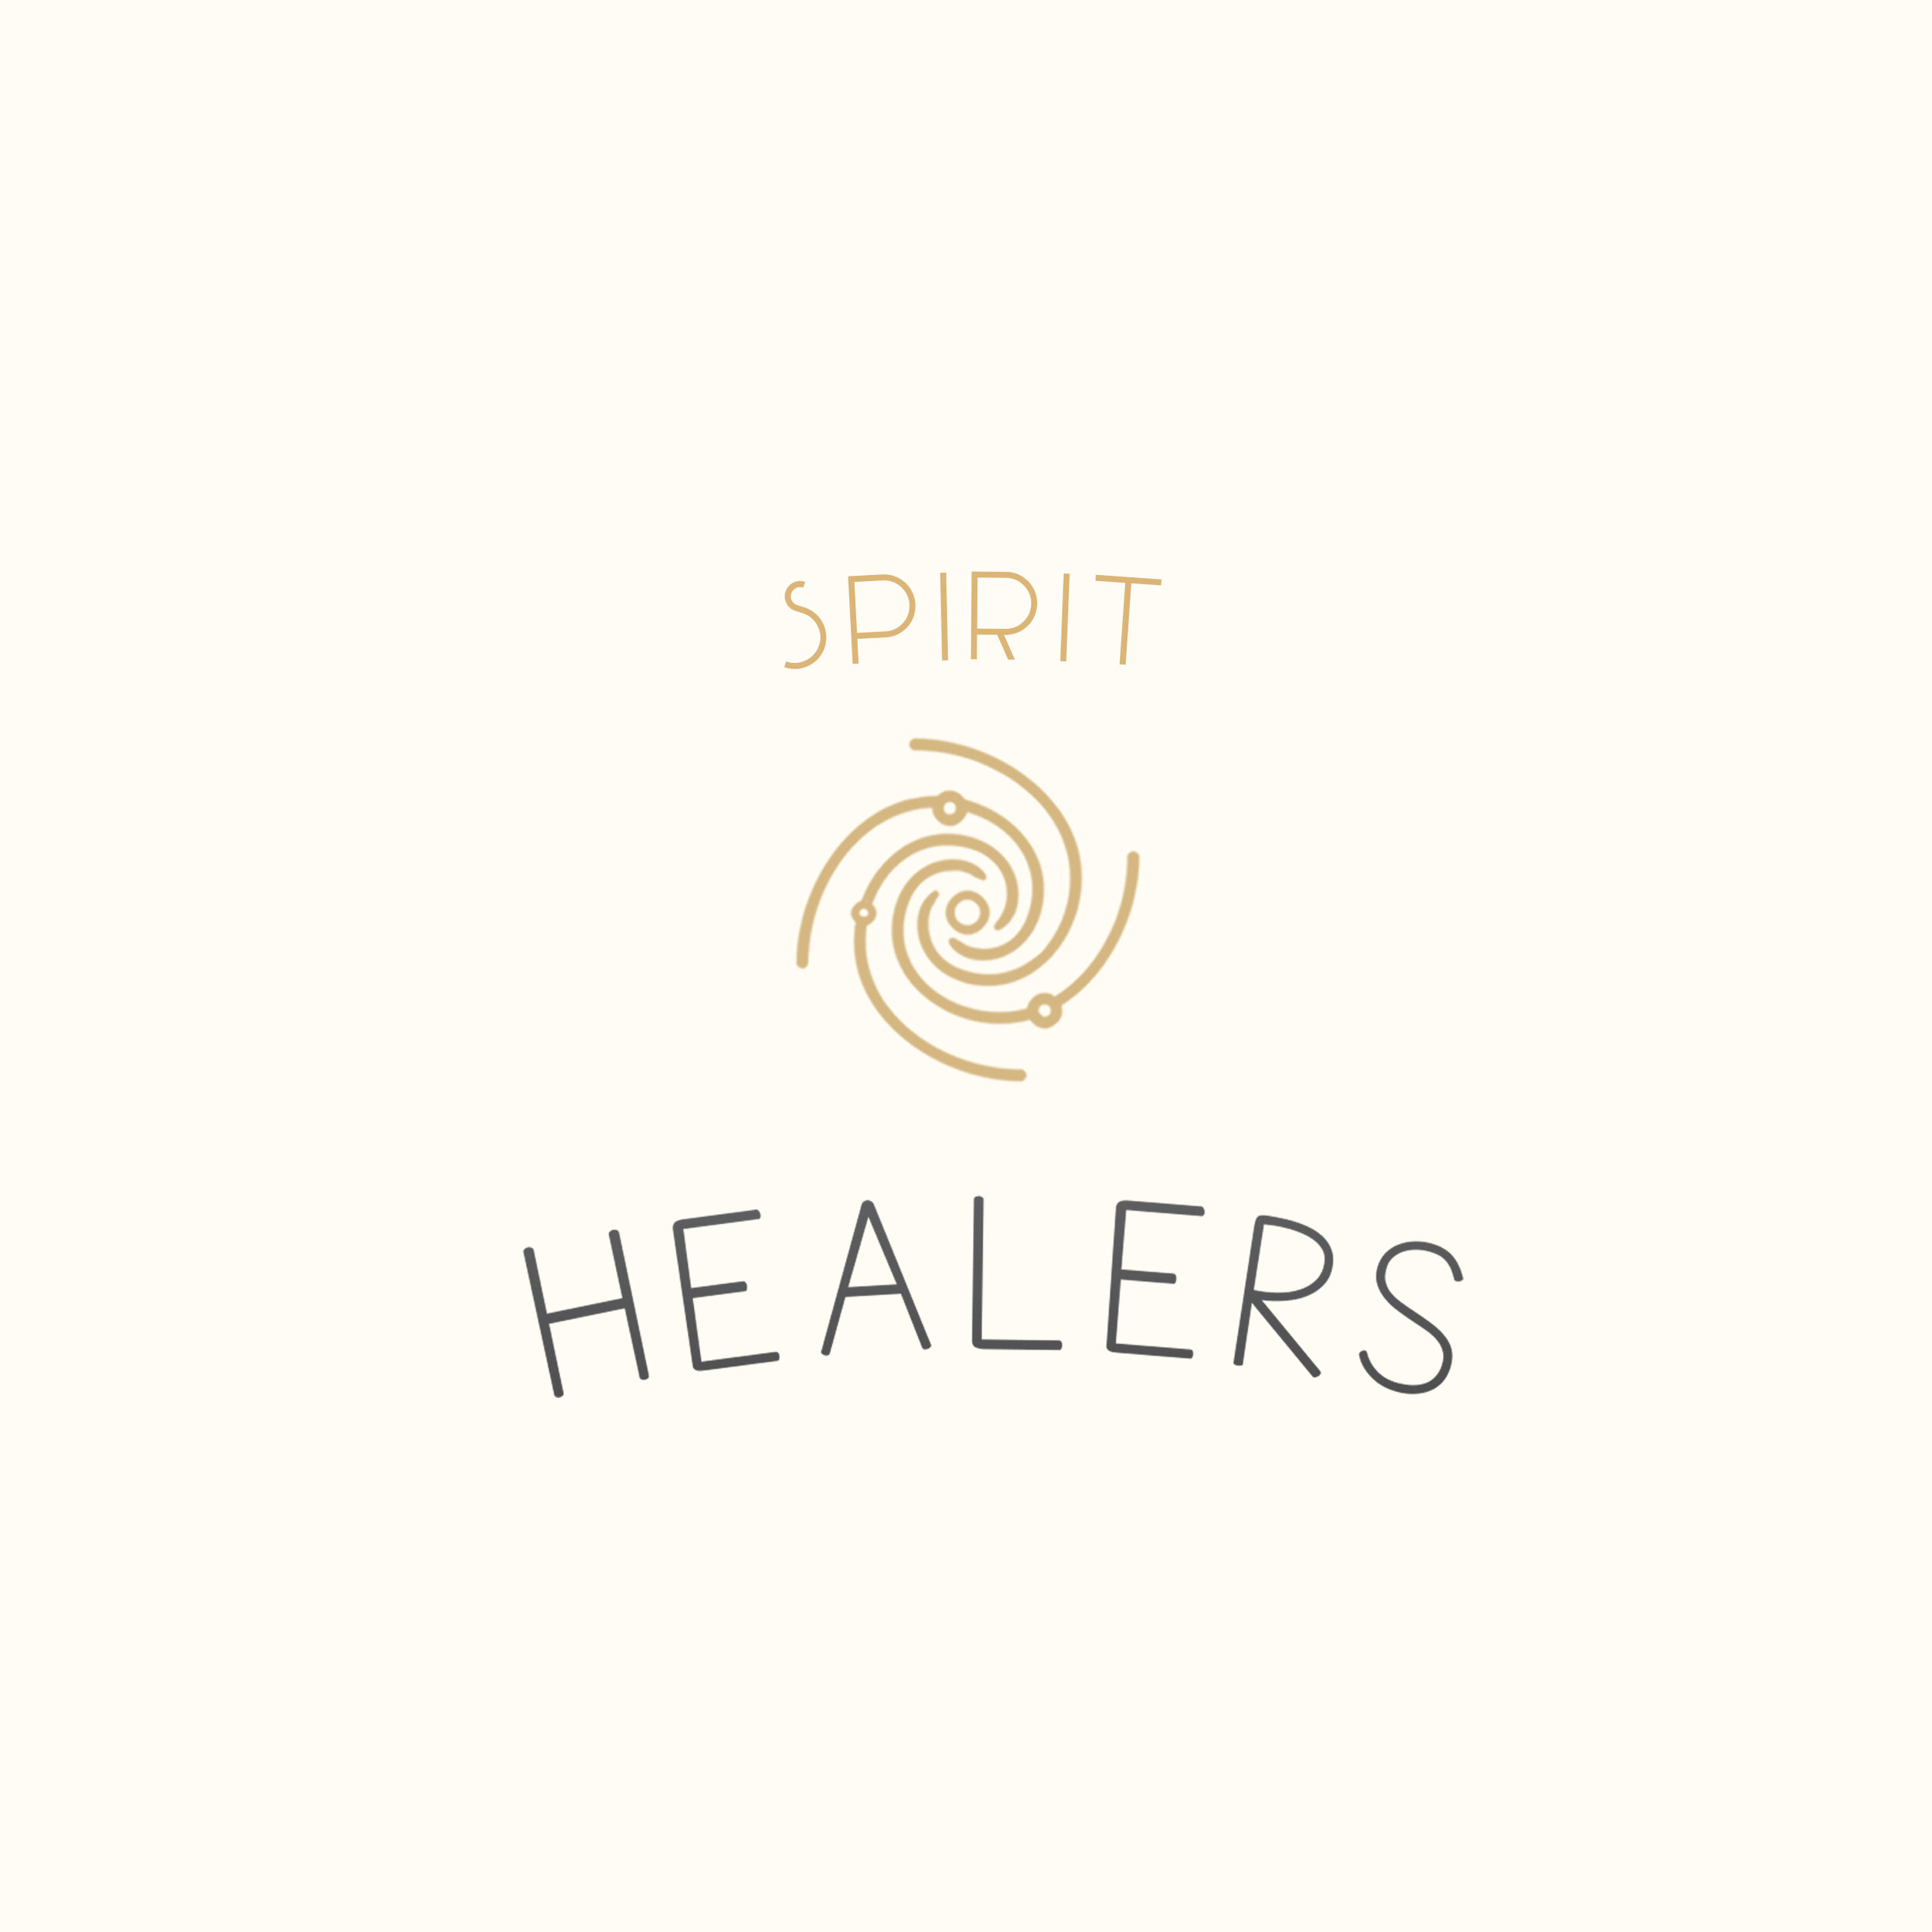 HOME PAGE - Spirit Healers.jpg